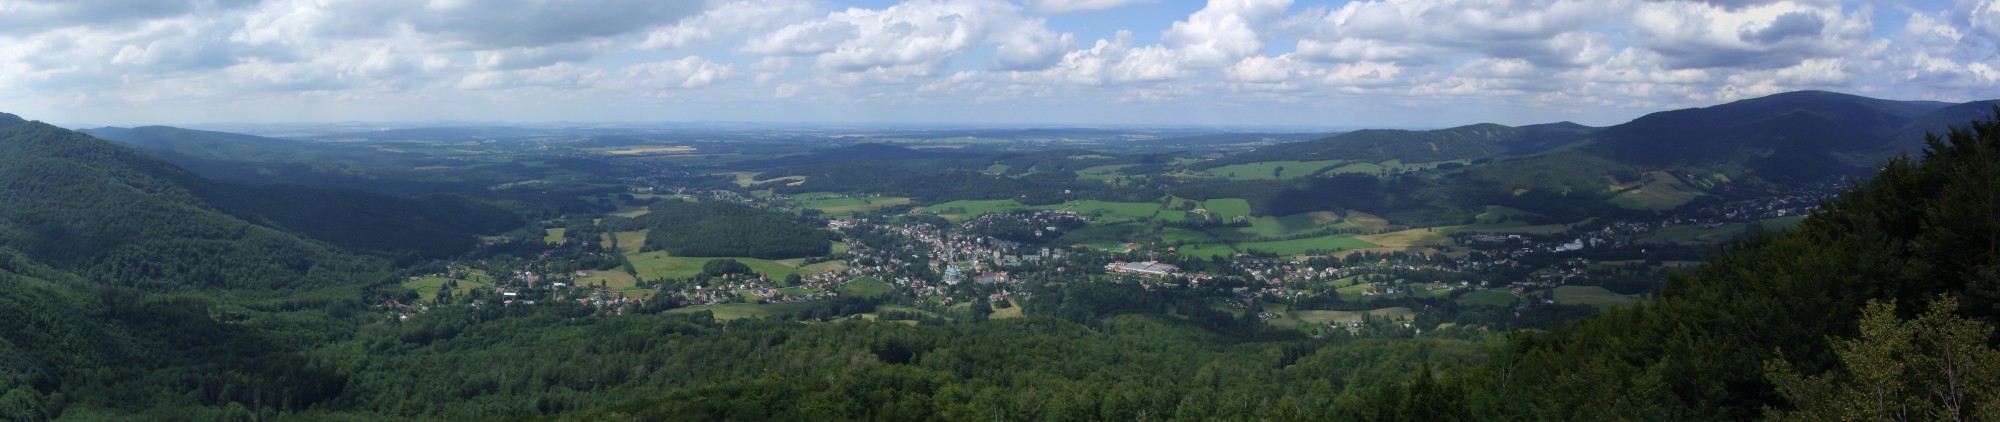 Ořešník (Nußstein) - pohled z vrcholu